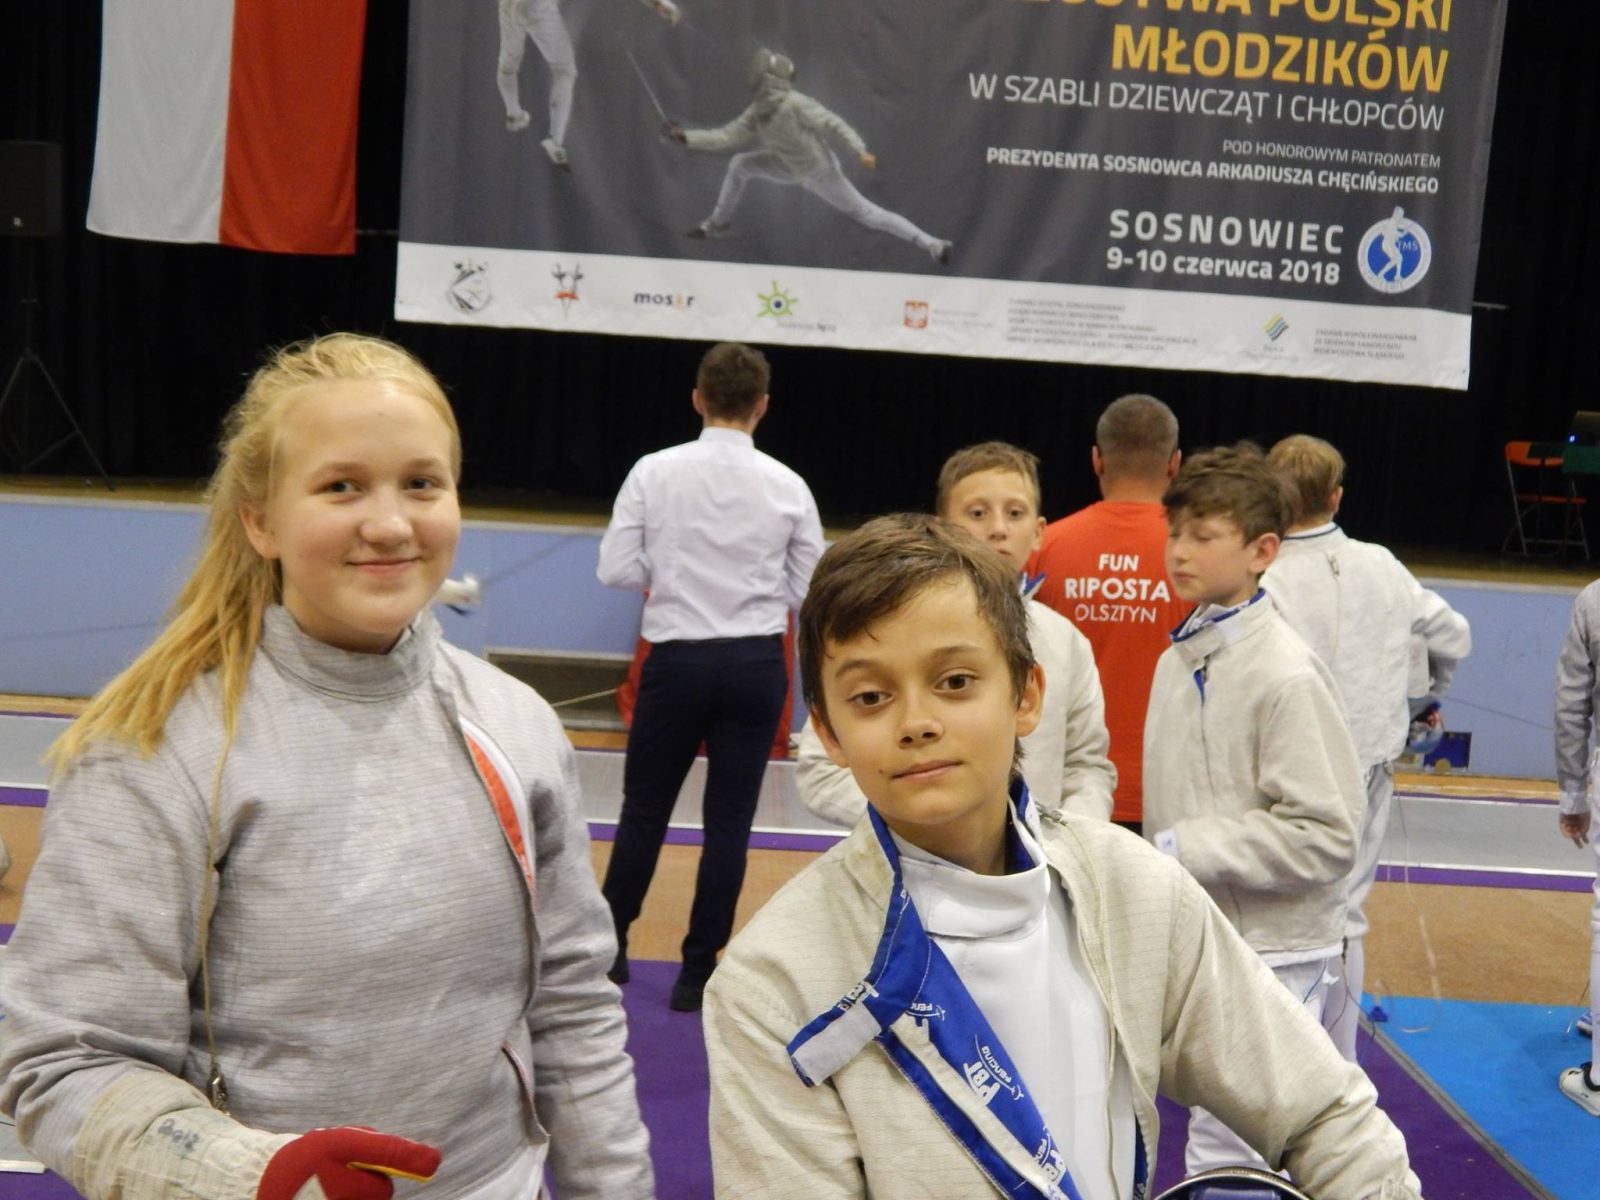 Mistrzostwa Polski Młodzików 2018 w Sosnowcu